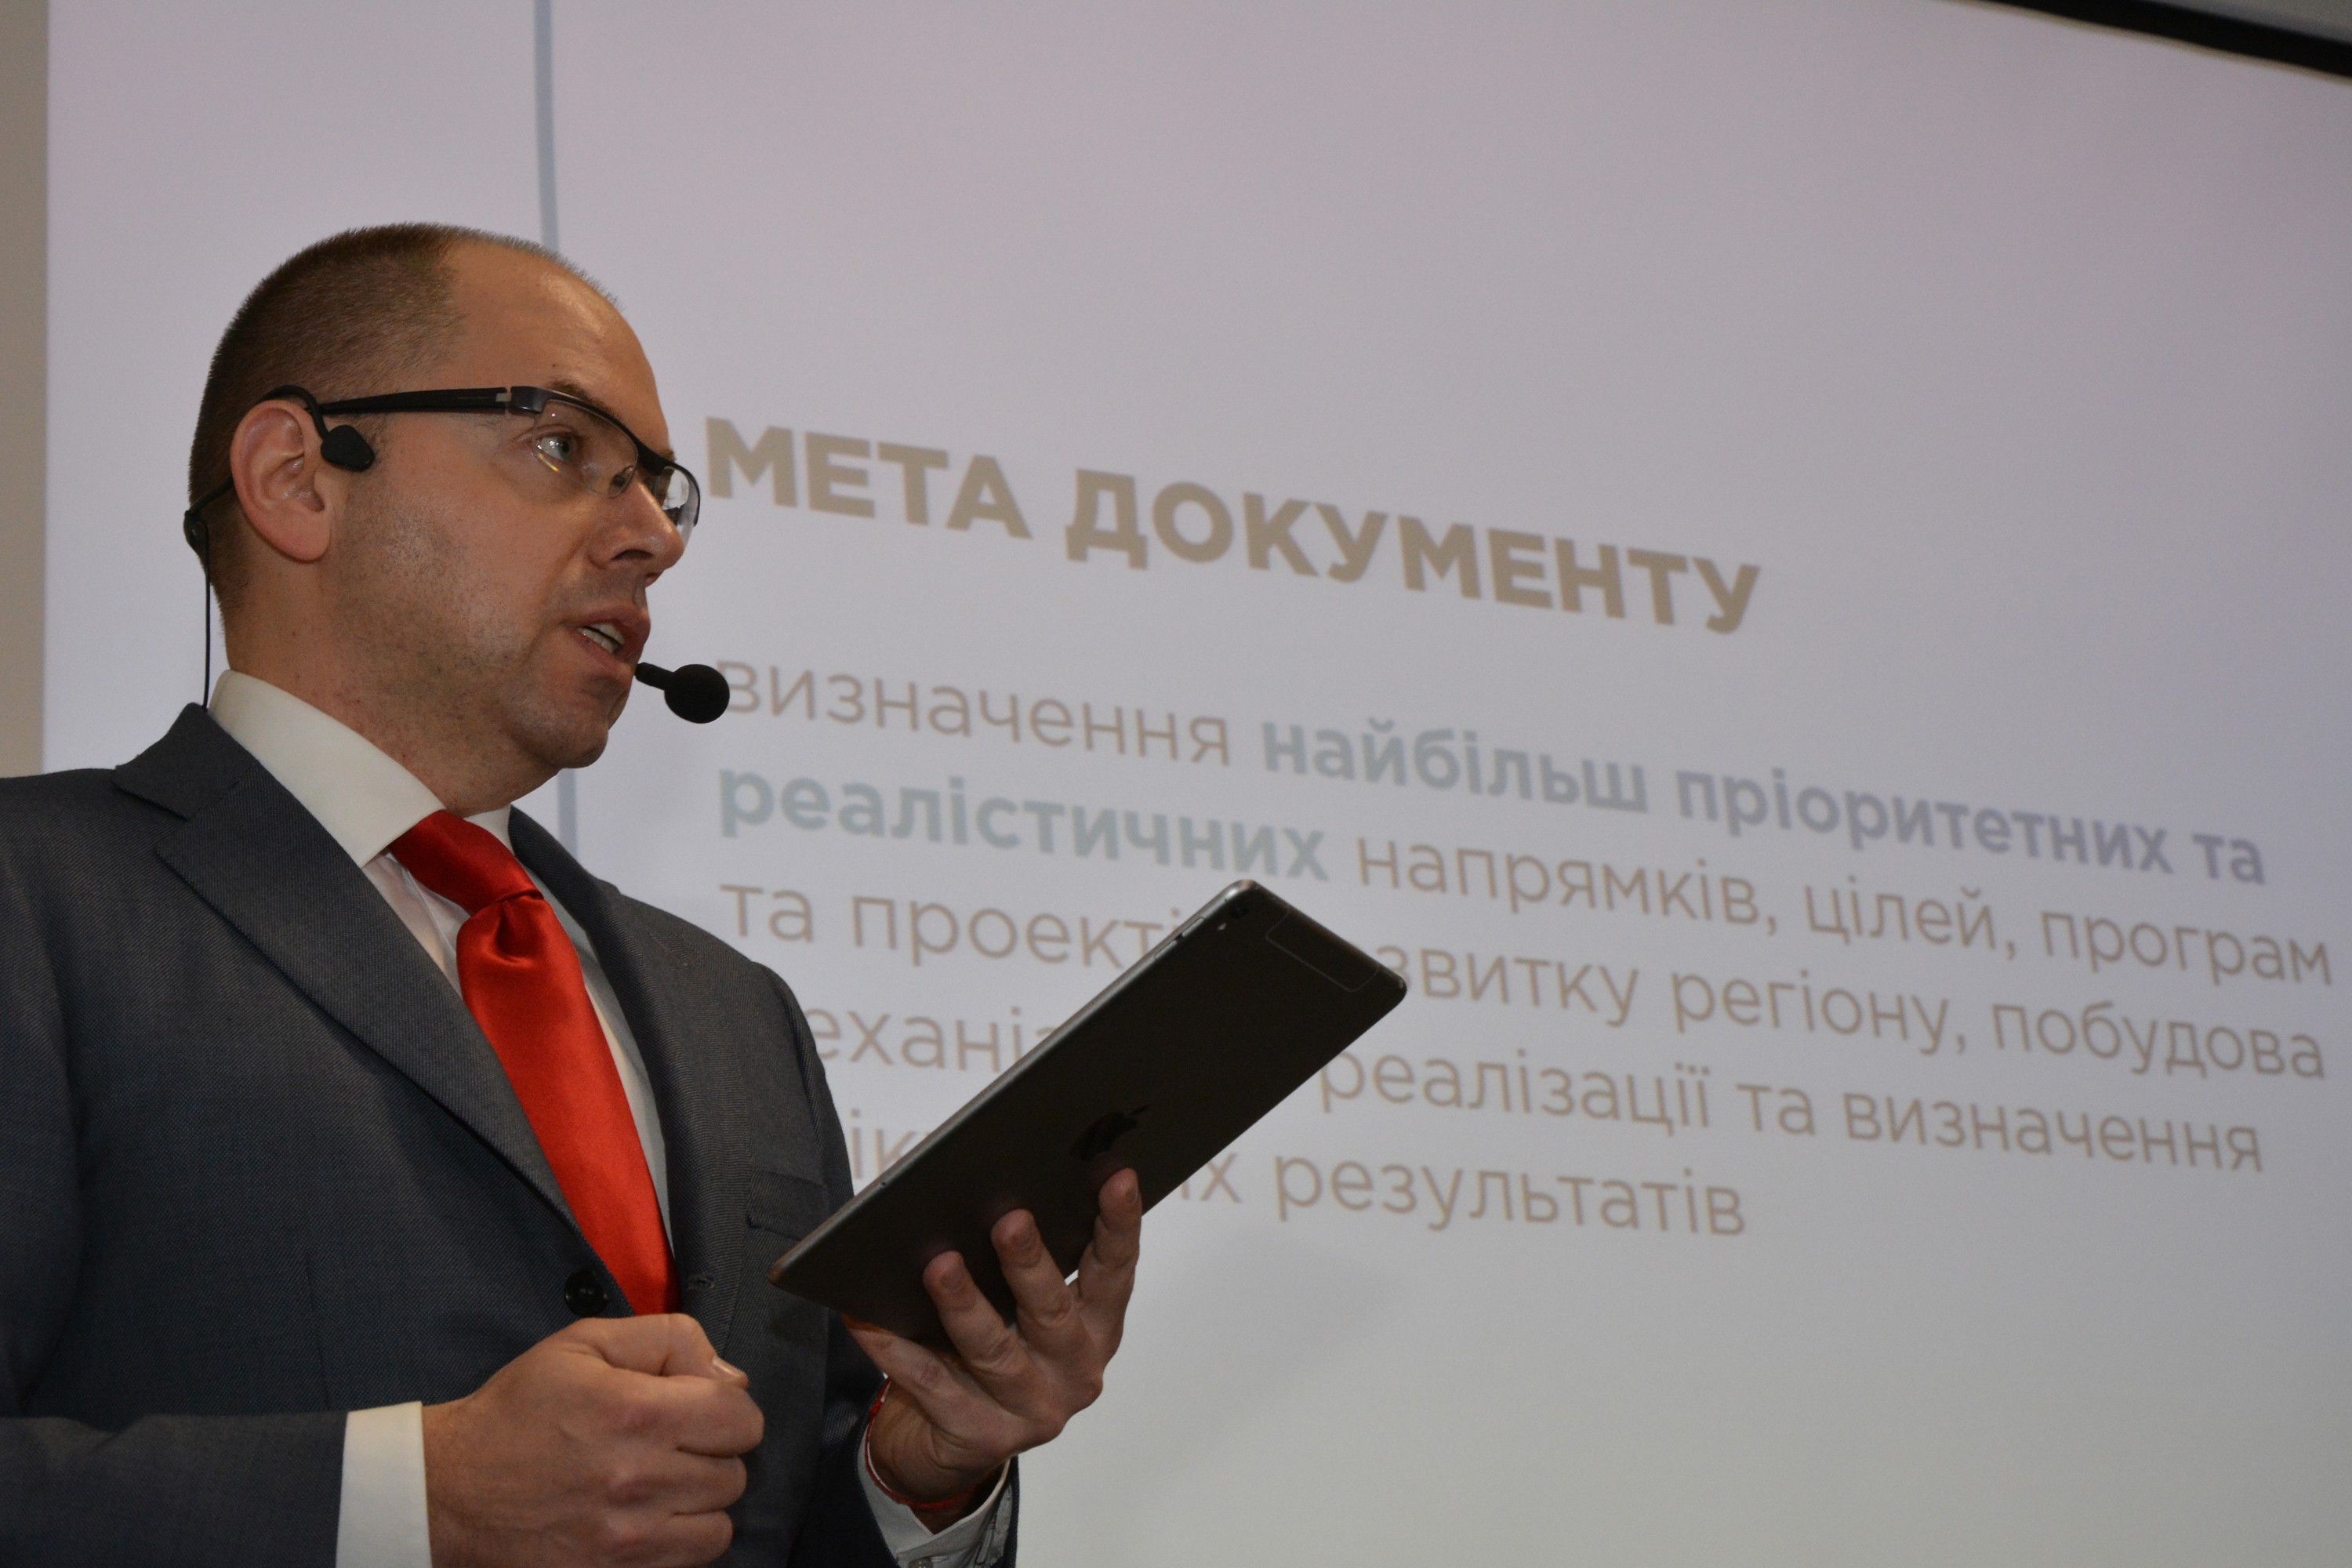 Одесский губернатор взбунтовался и не хочет подчиняться указу Порошенко